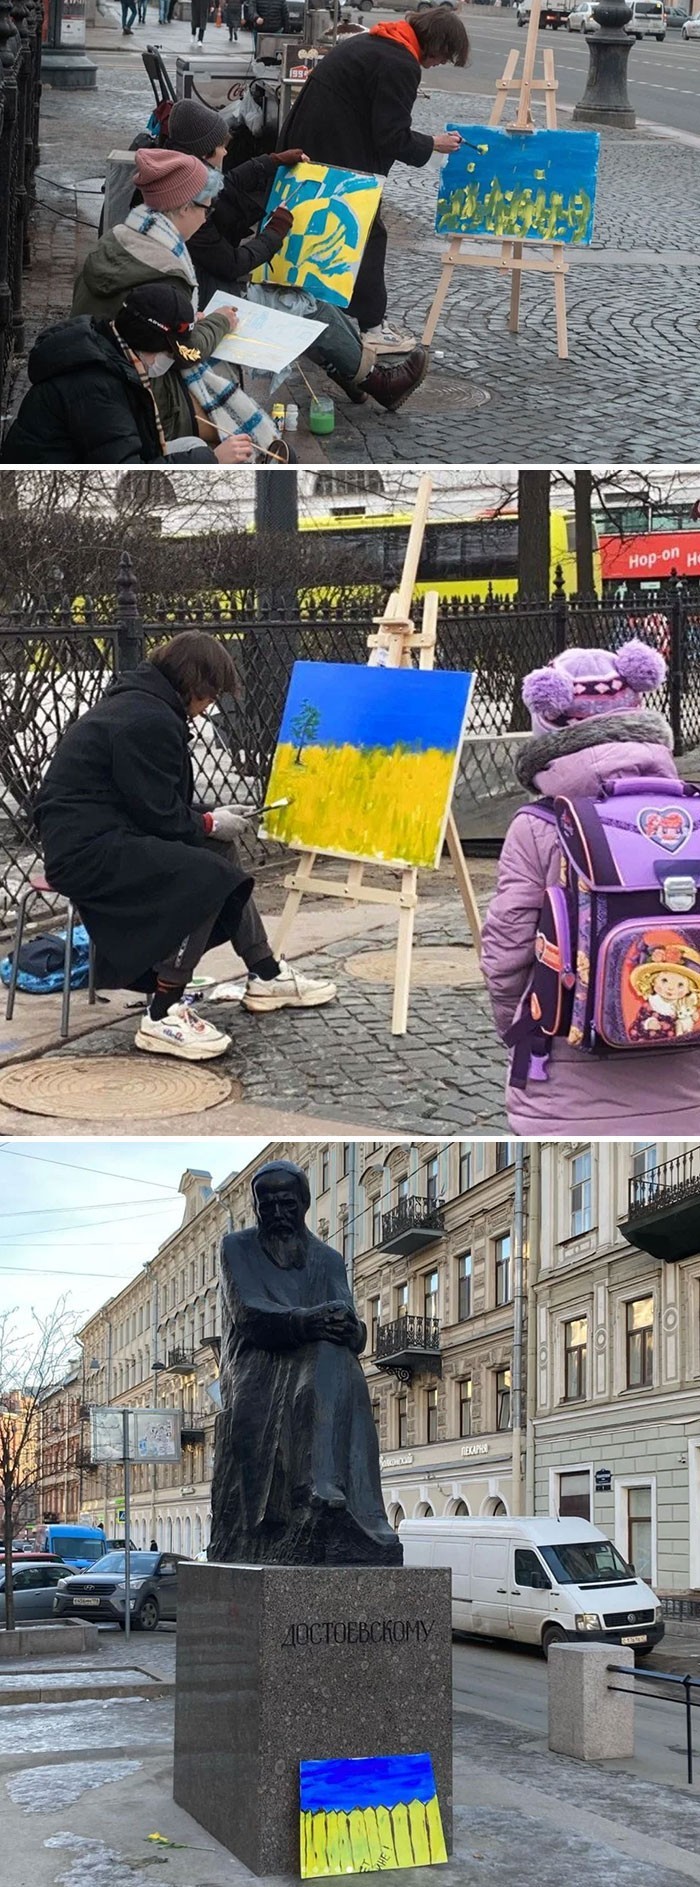 "Nieautoryzowane protesty są wzbronione w Rosji, więc artyści w Petersburgu postanowili poćwiczyć malowanie na świeżym powietrzu."